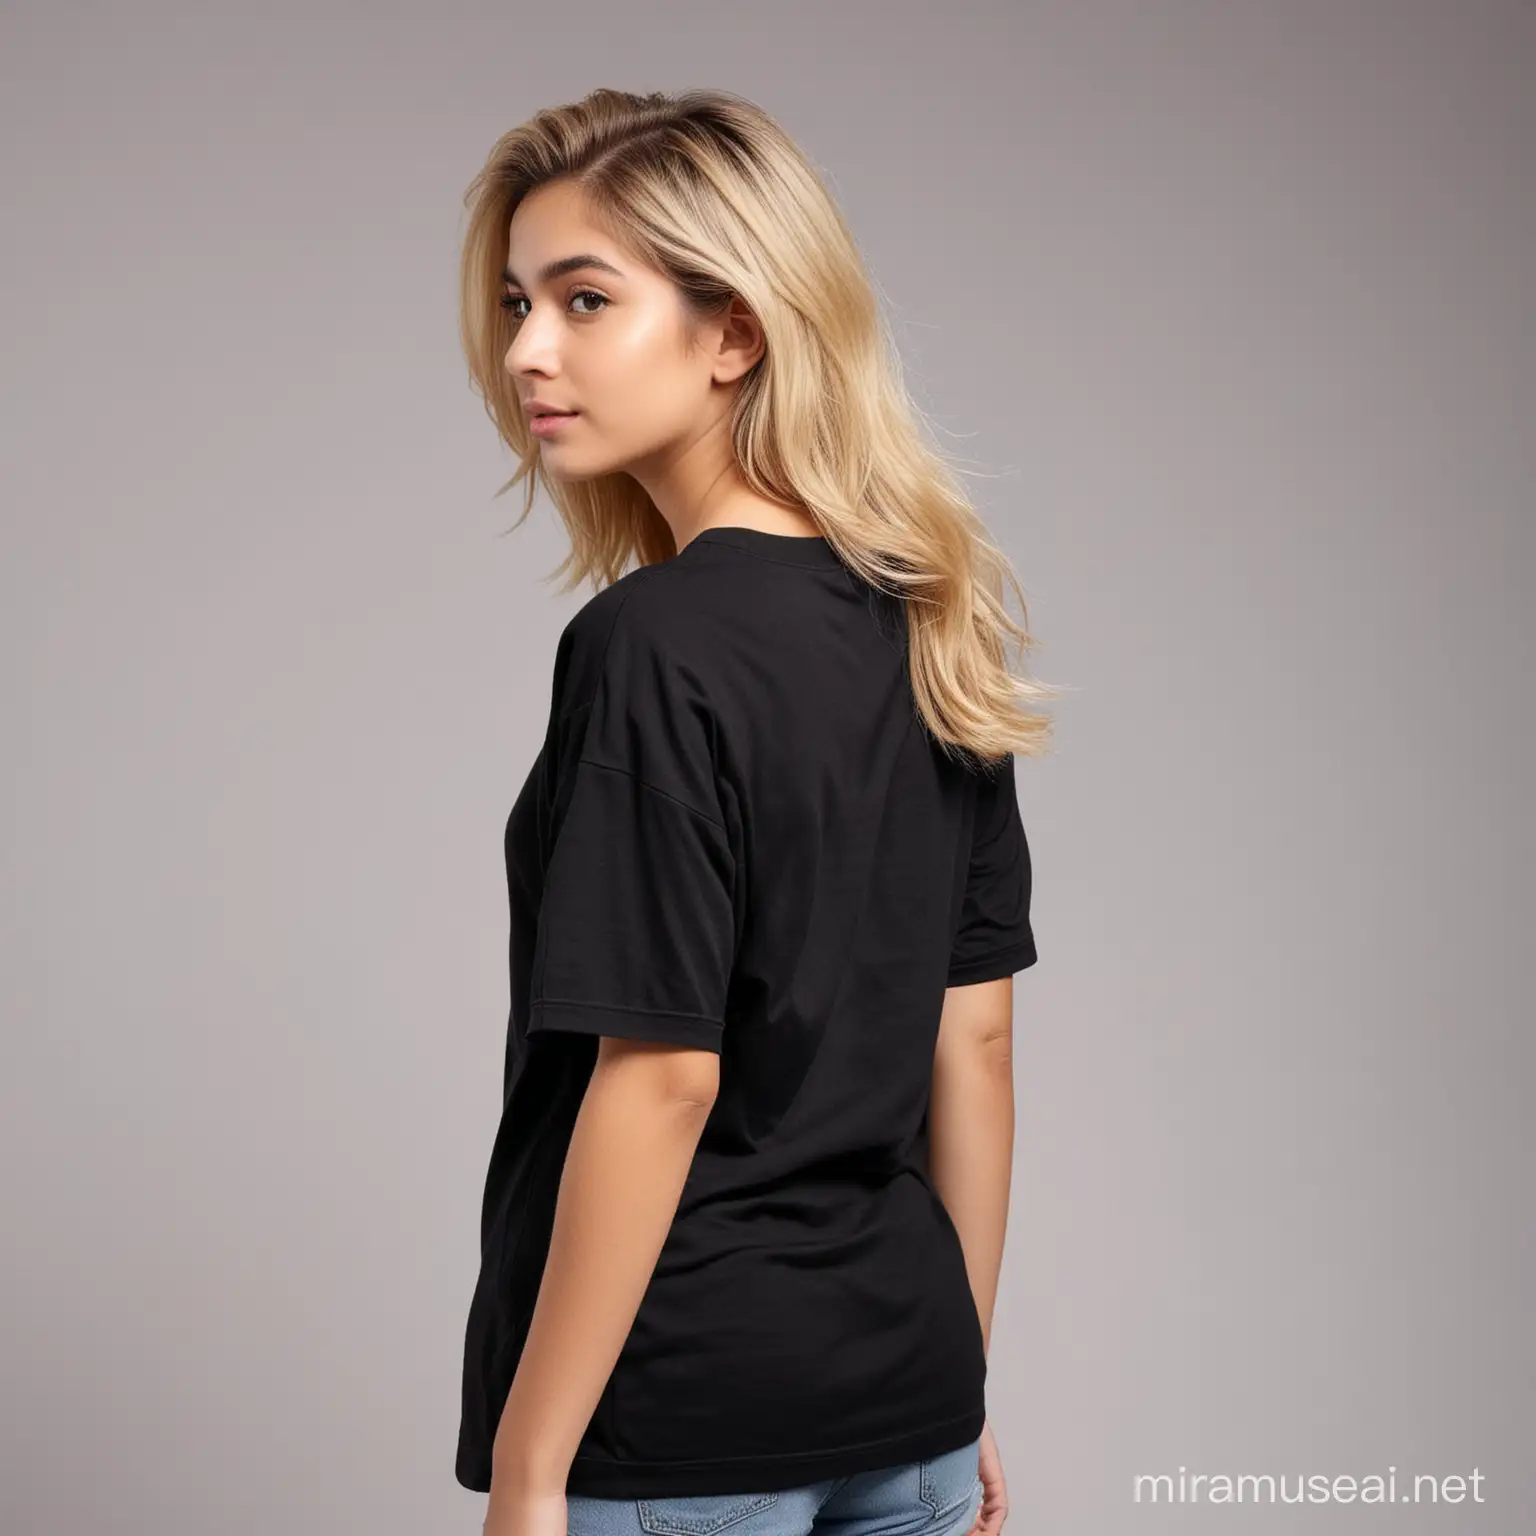 Pakistani Teen Girl Blonde Hair Modeling Plain Black Oversized TShirt in Brand Photoshoot